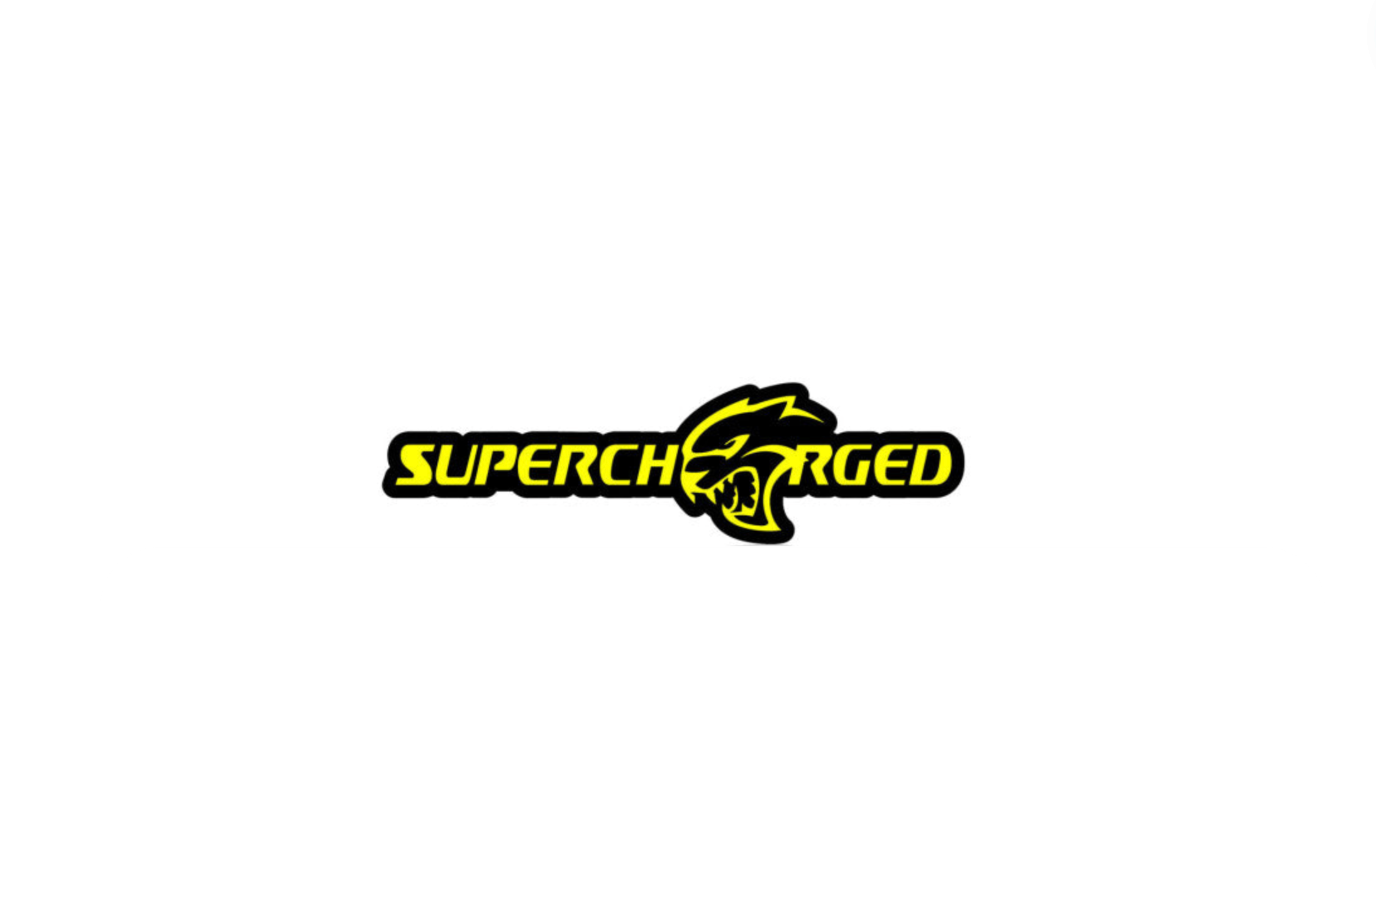 DODGE ラジエーター グリル エンブレムとヘルキャットのロゴ